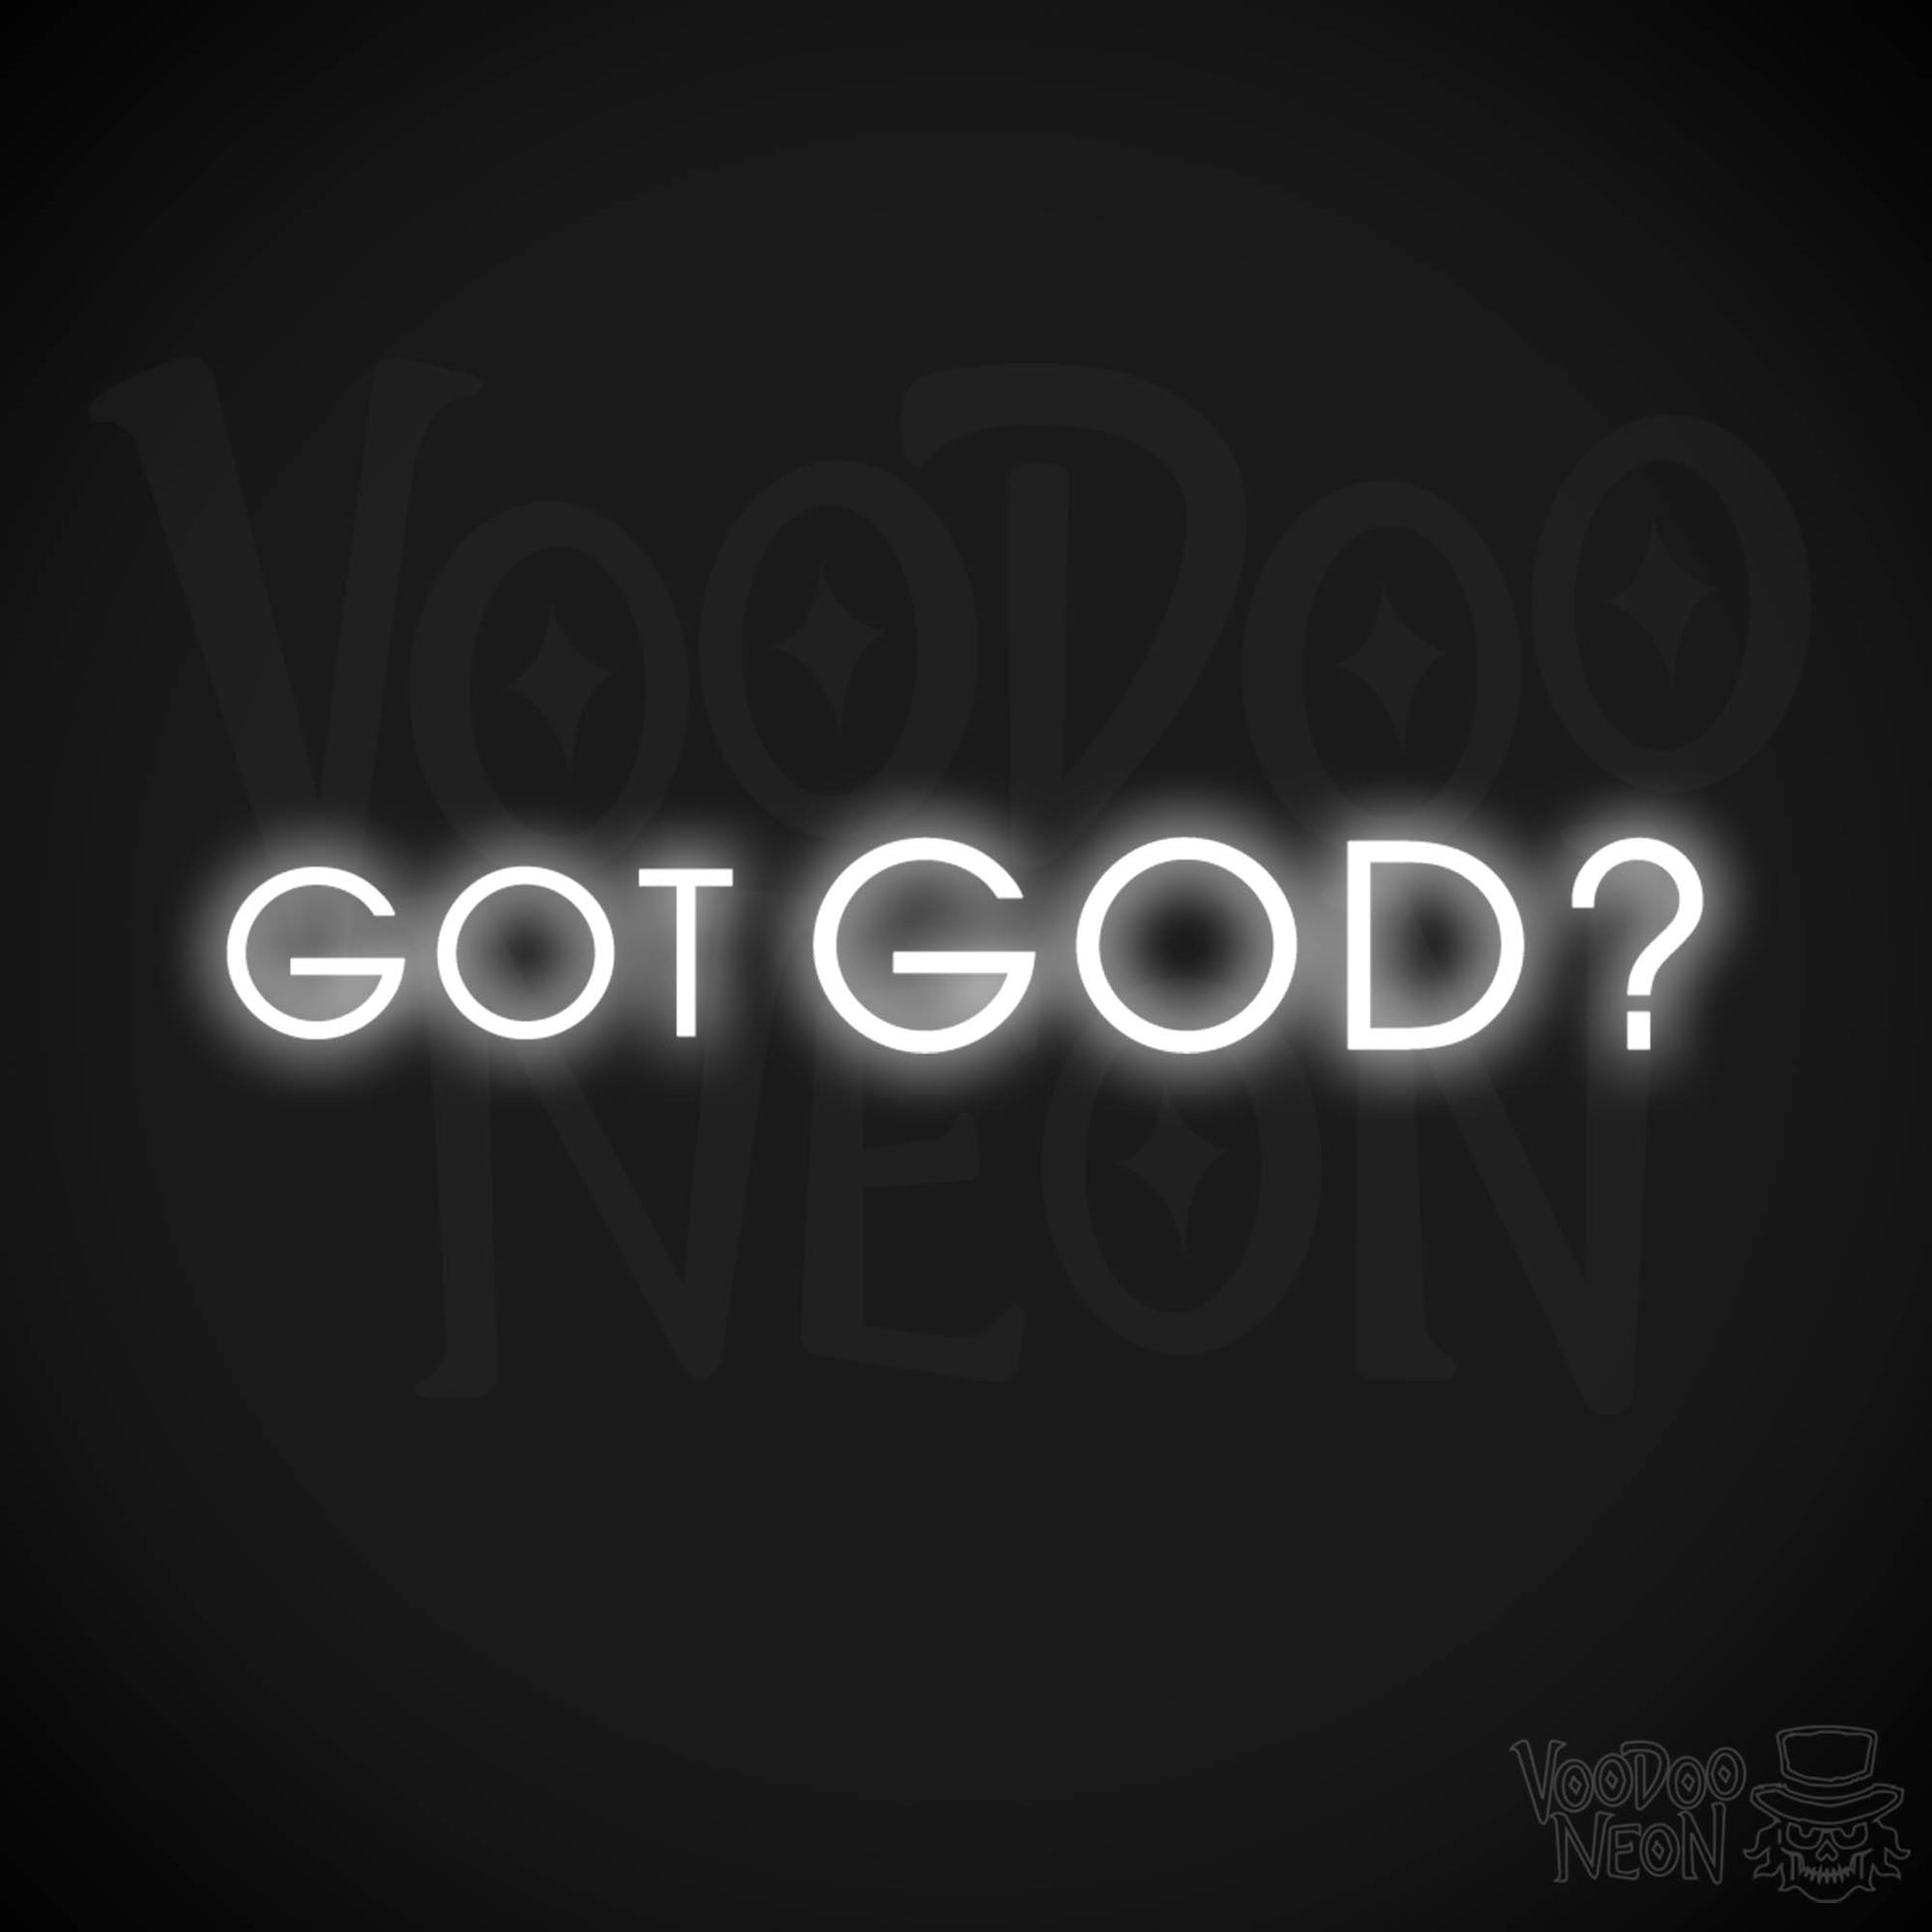 Got God Neon Sign - Neon Got God Sign - Neon God Sign - LED Wall Art - Color White